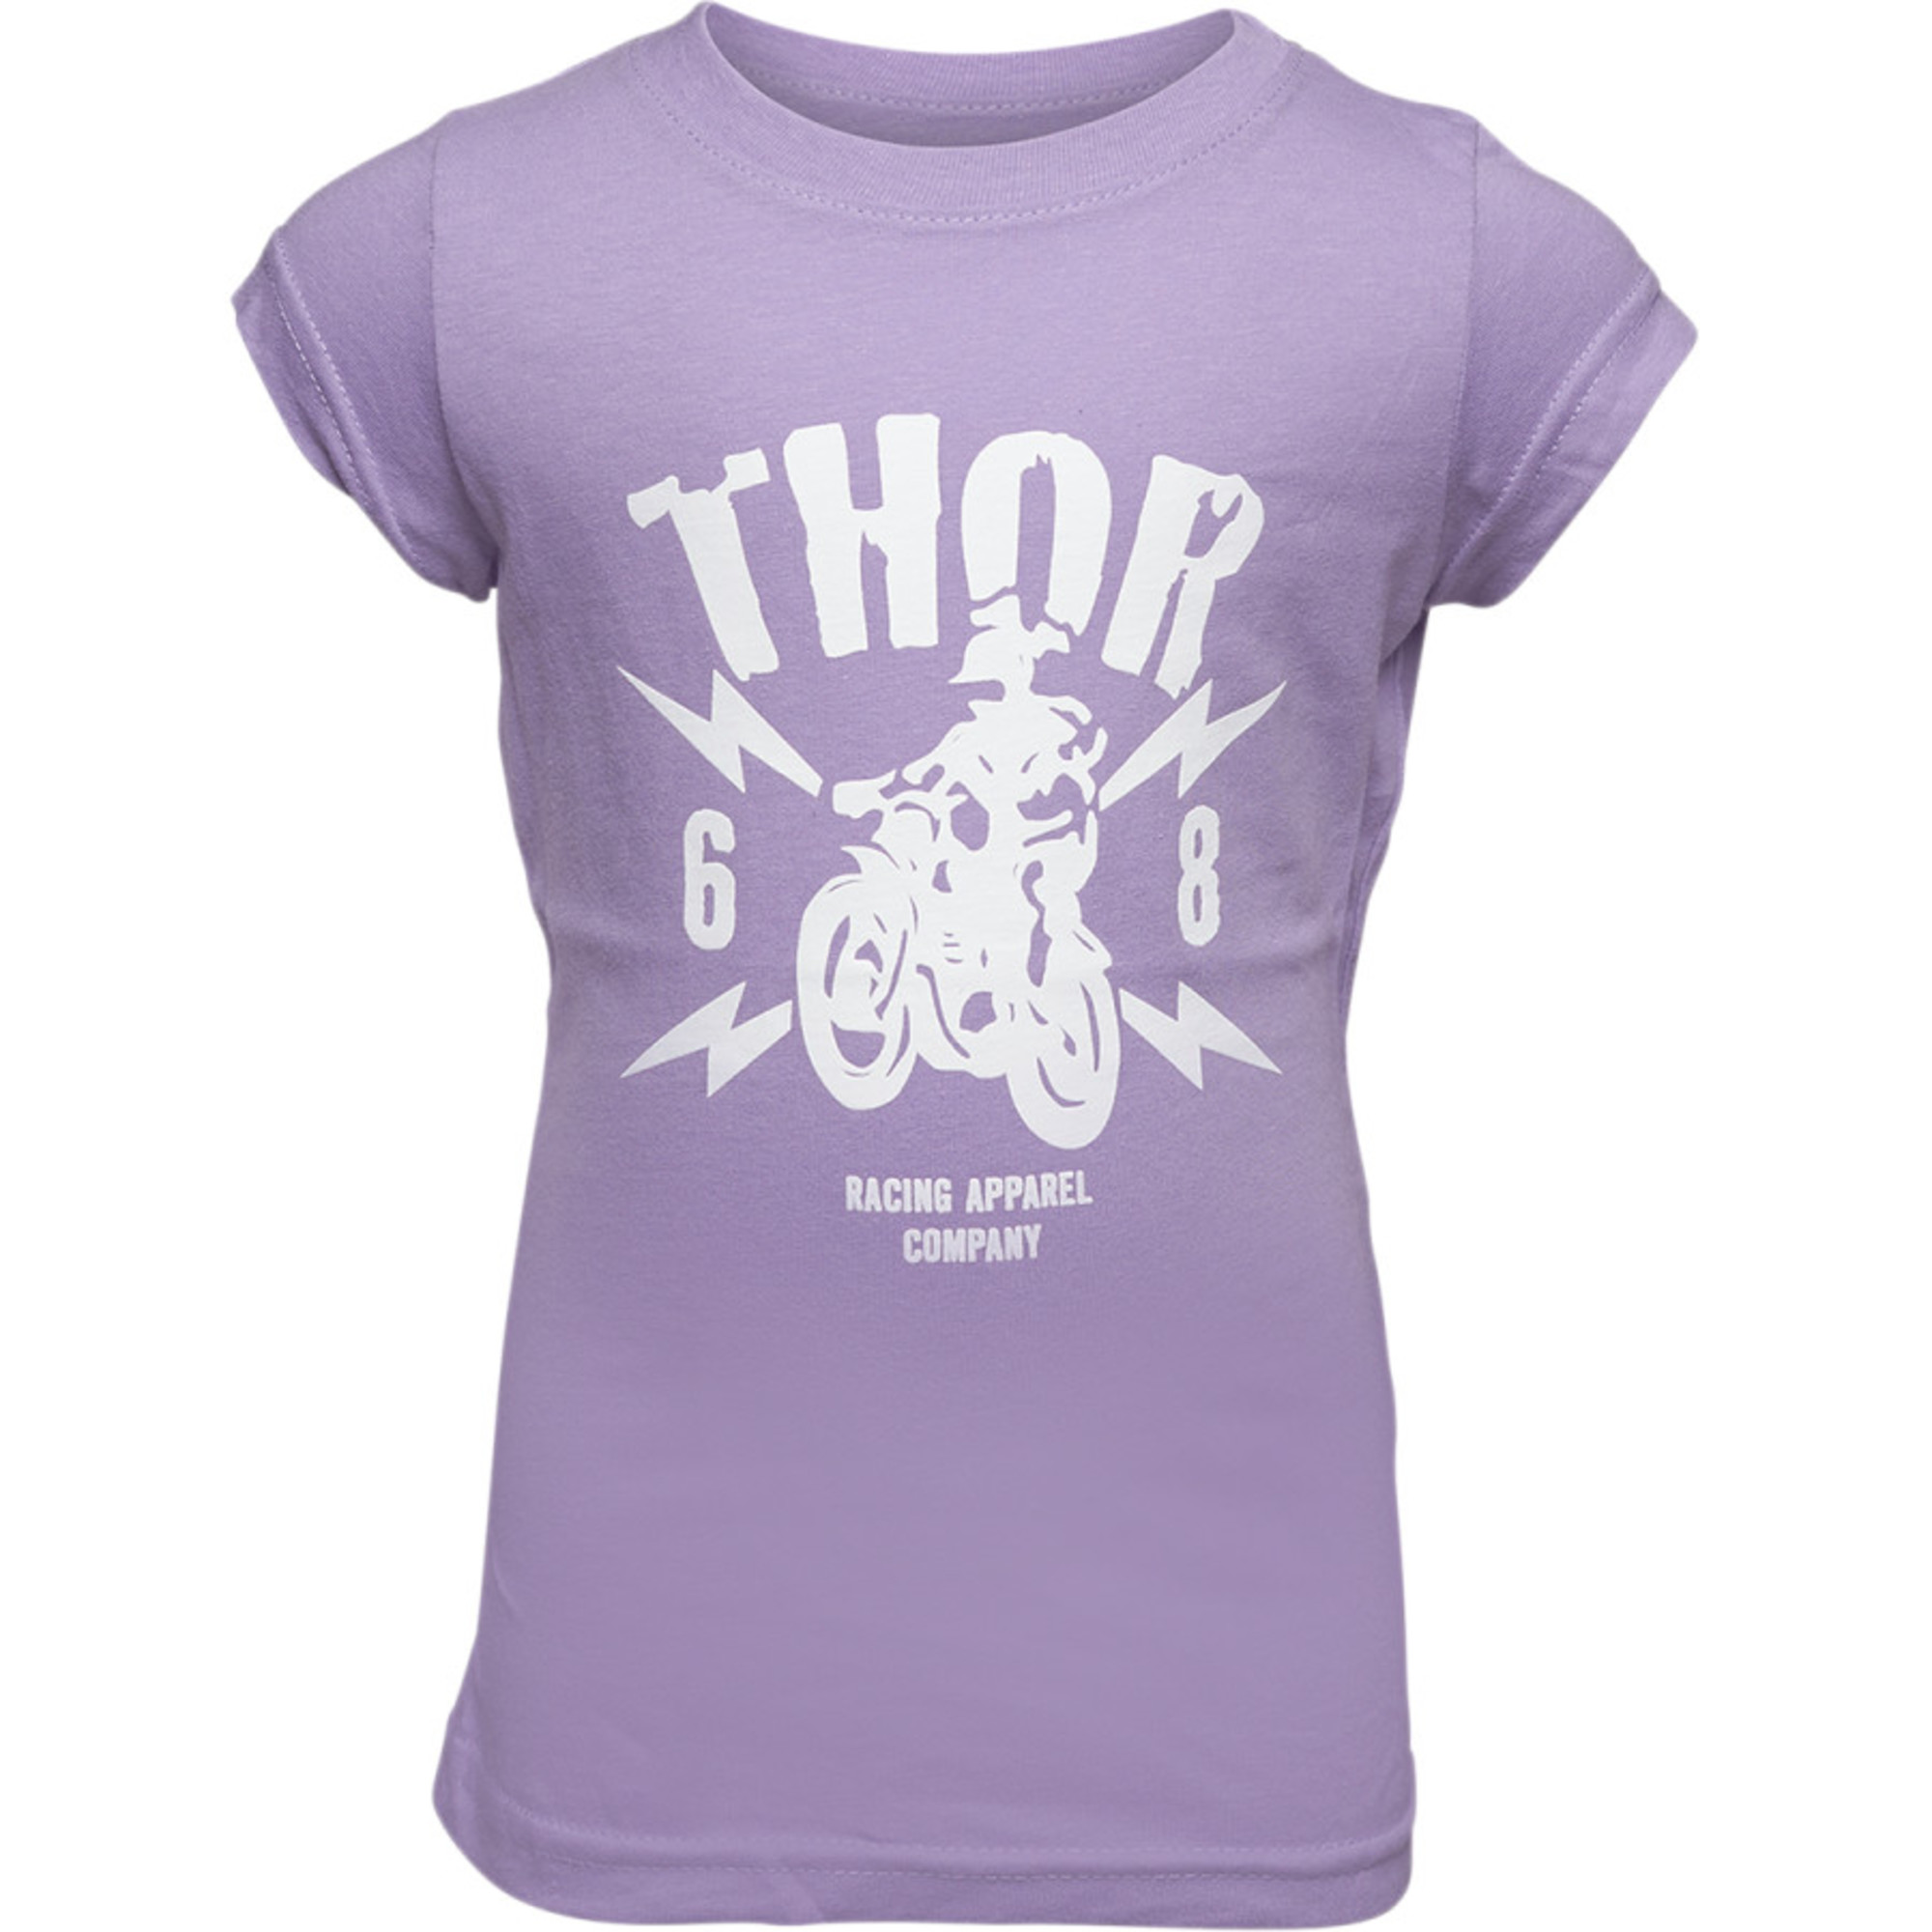 thor t-shirt shirts for kids toddler girls lighting